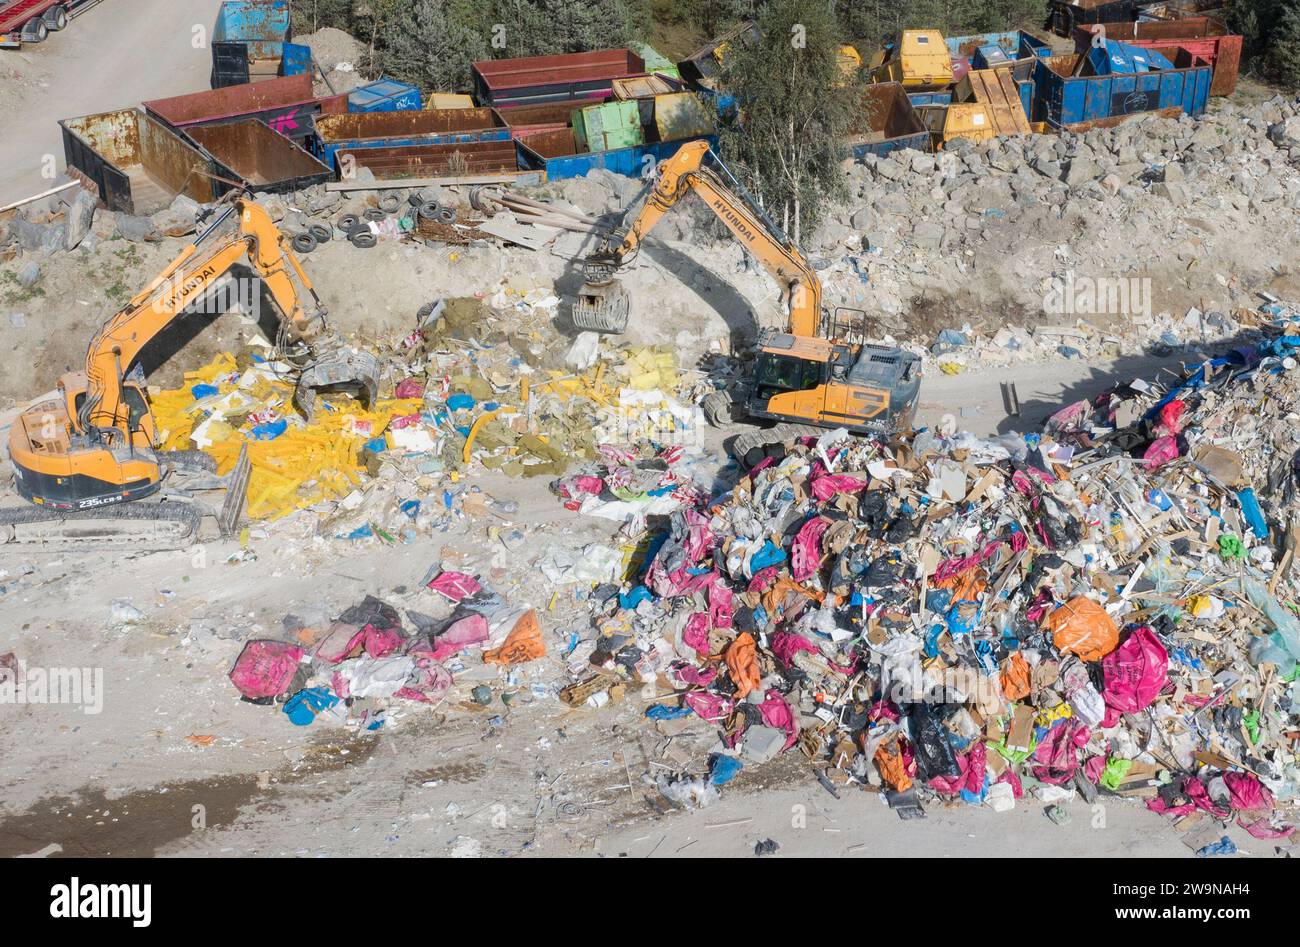 FOTO ARCHIVIATA Un impianto di riciclaggio in cui l'azienda NMT Think Pink gestisce i rifiuti edili, vicino a Tumba a Stoccolma, Svezia. 18 settembre 2020. Foto: Fredrik Sandberg/TT/code 10080 credito: TT News Agency/Alamy Live News Foto Stock